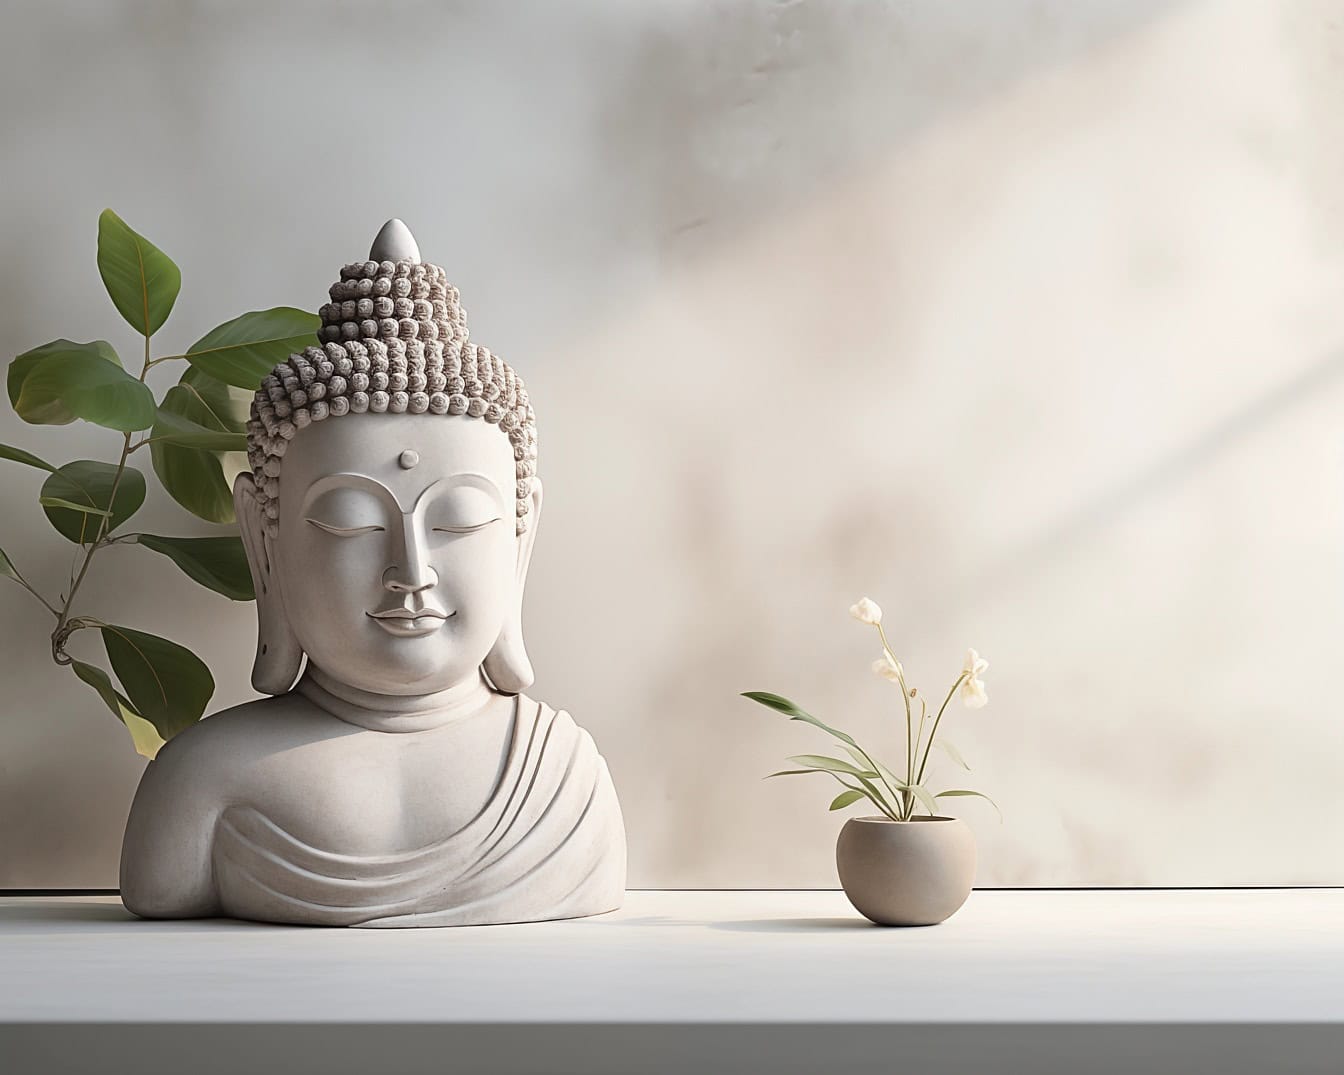 佛陀头部和躯干的白色雕像旁边是一朵白色的花朵，描绘了极简主义的设计和平静的冥想